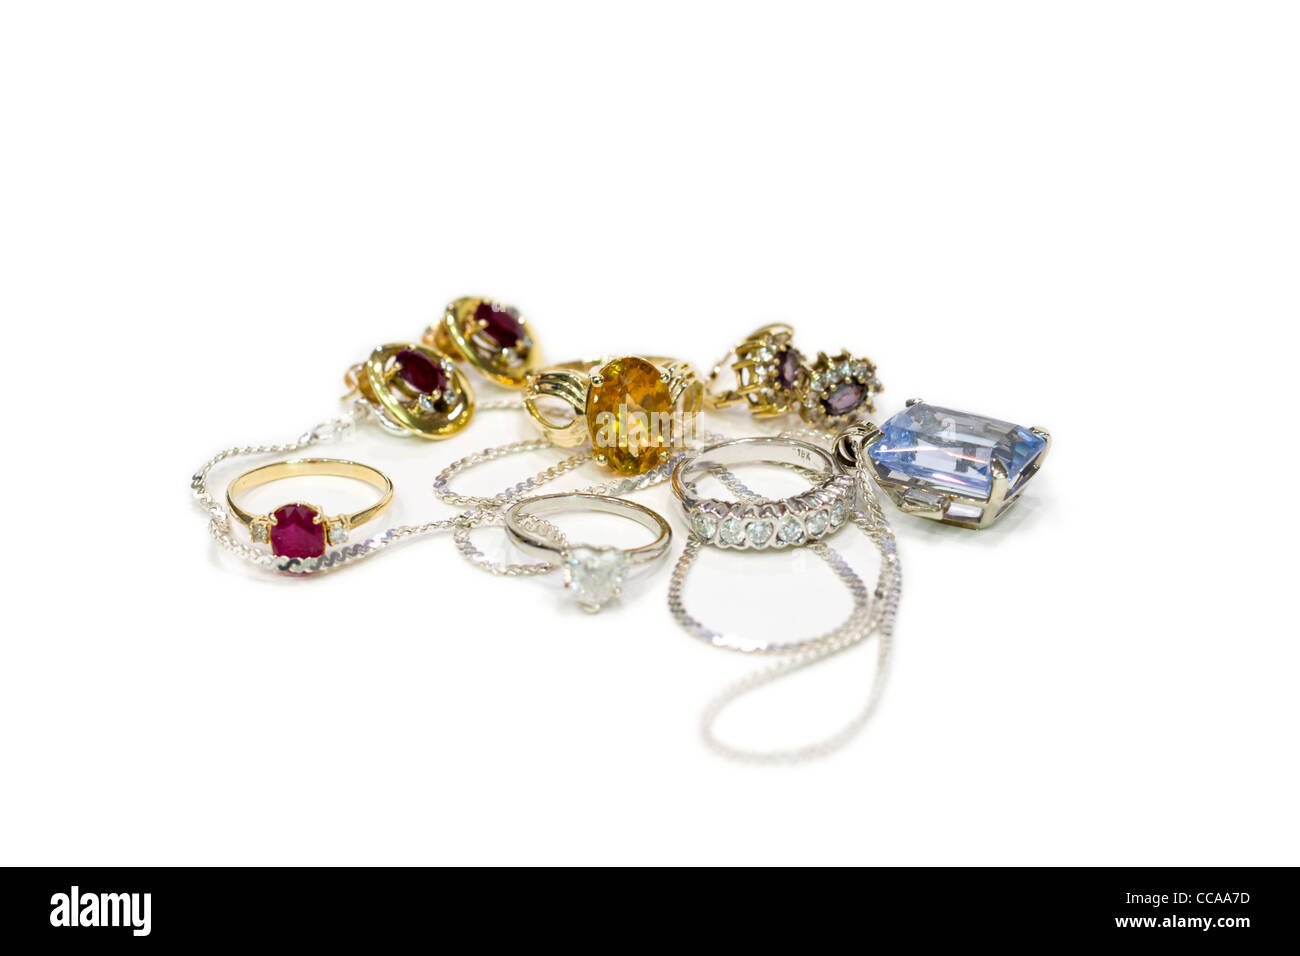 Expensive jewellery Stock Photo